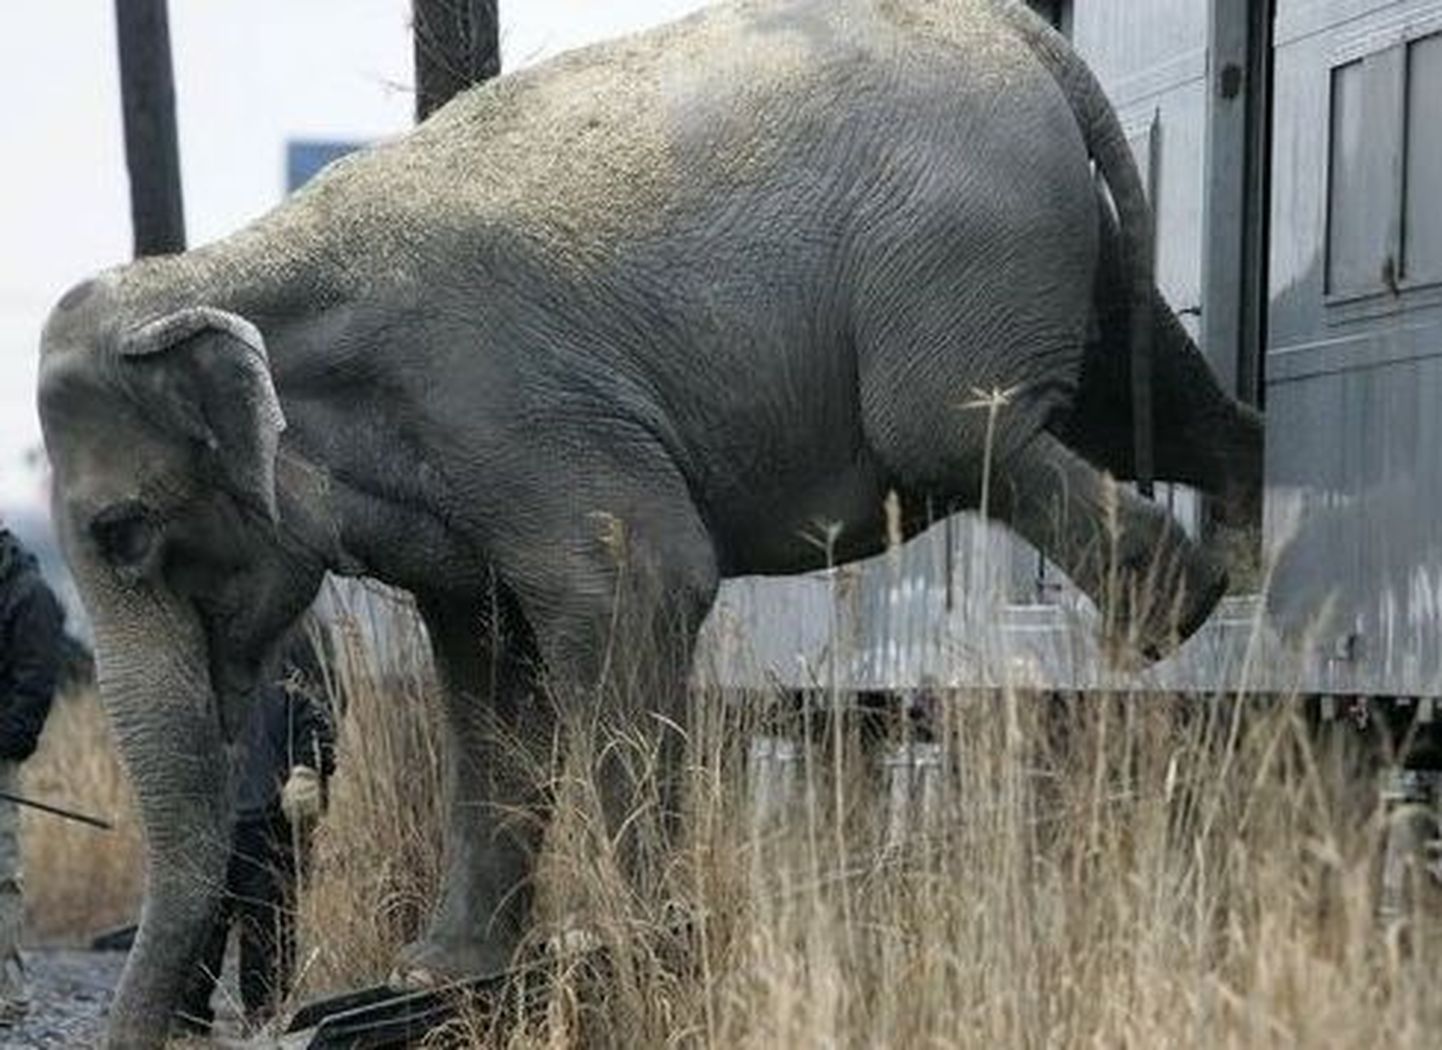 Belfasti loomaaed otsib elevandi päästjat